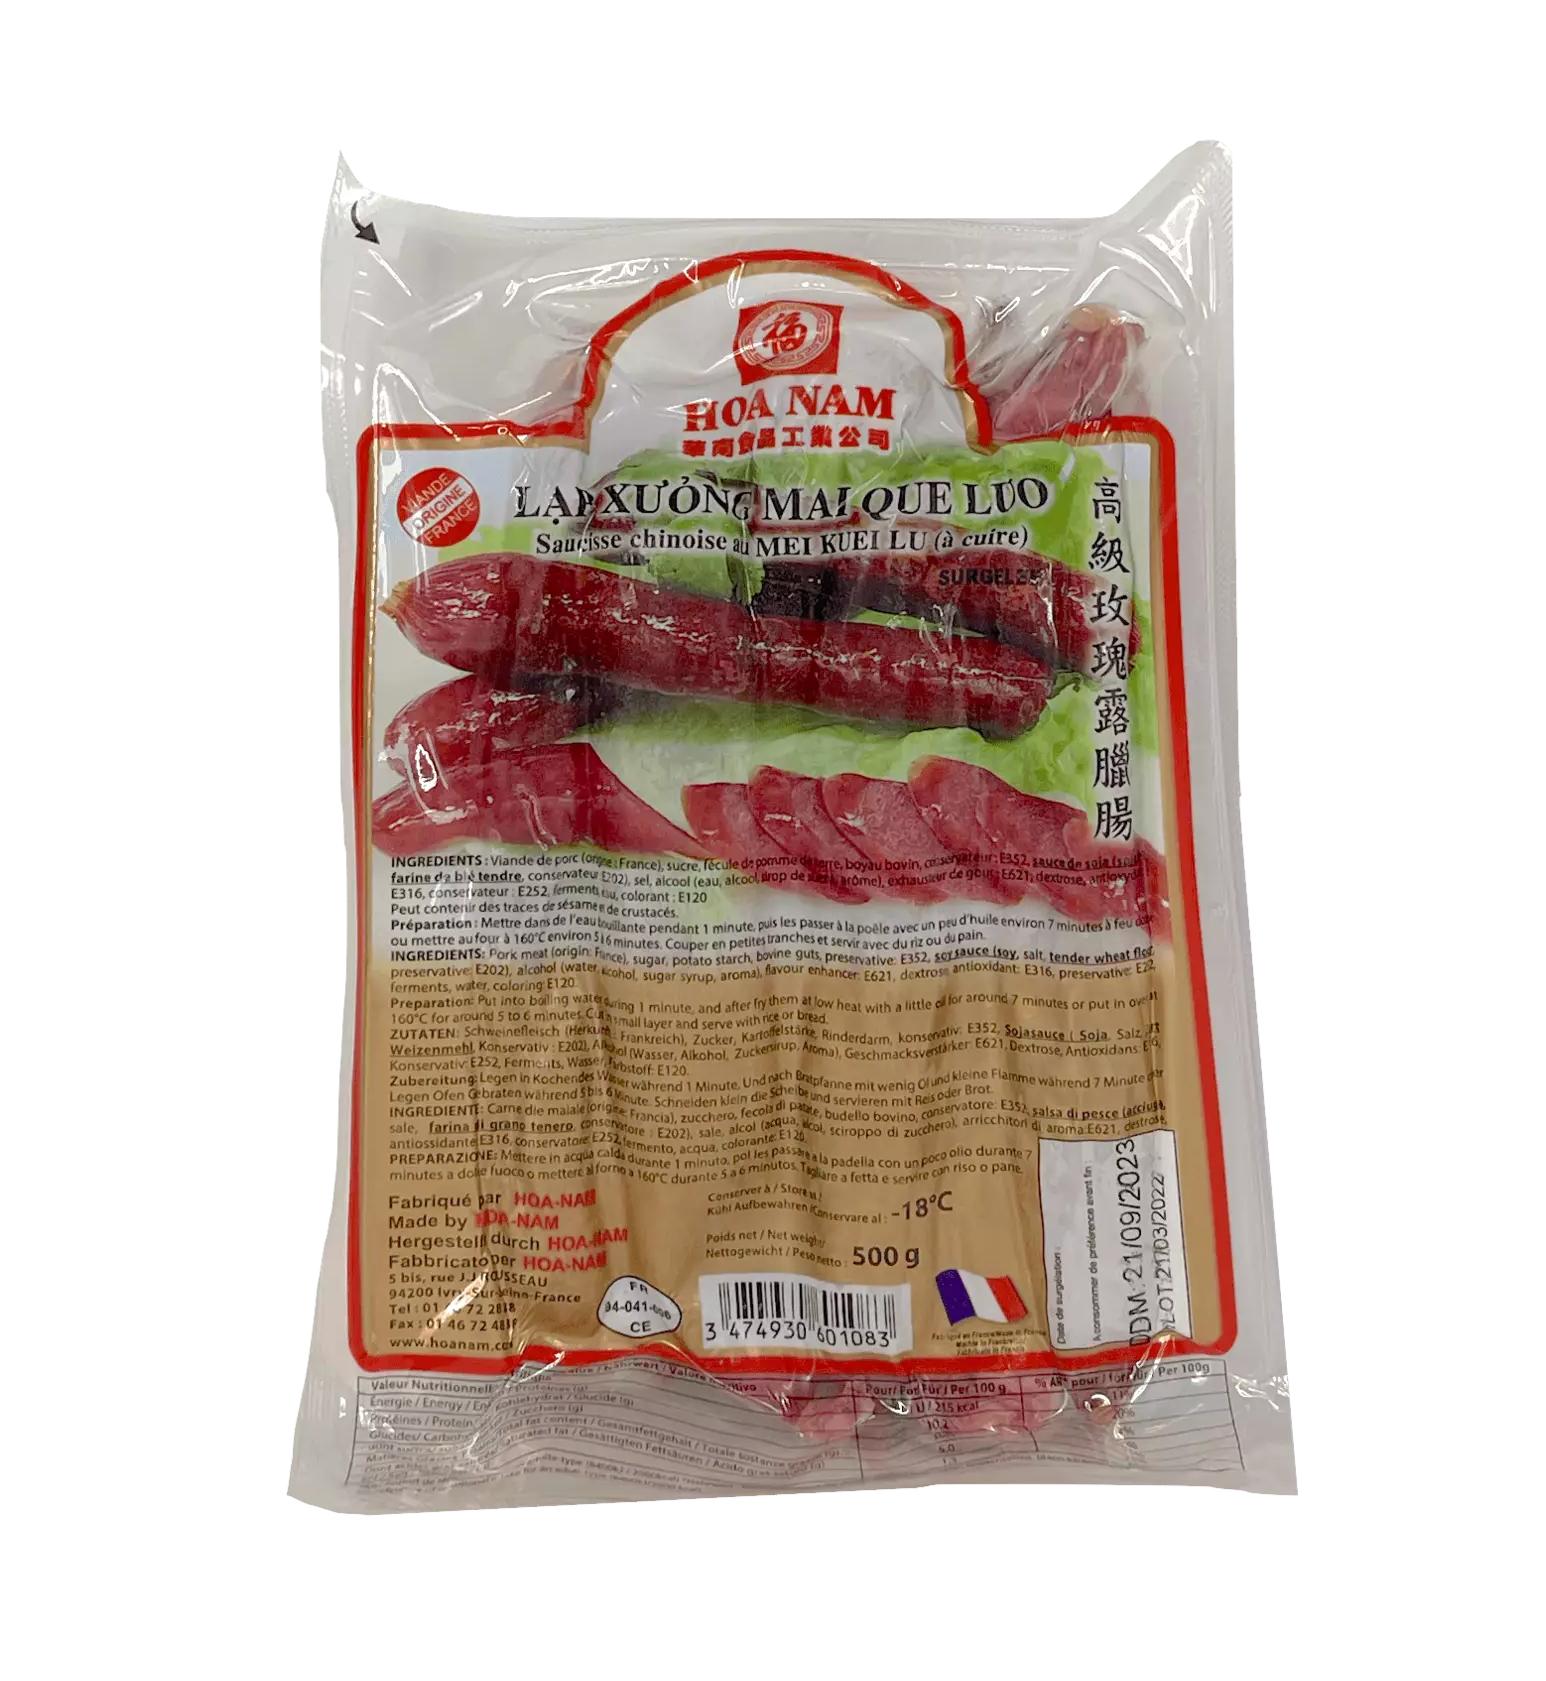 高级玫瑰露腊肠 冷冻 500g Hoa-Nam 法国